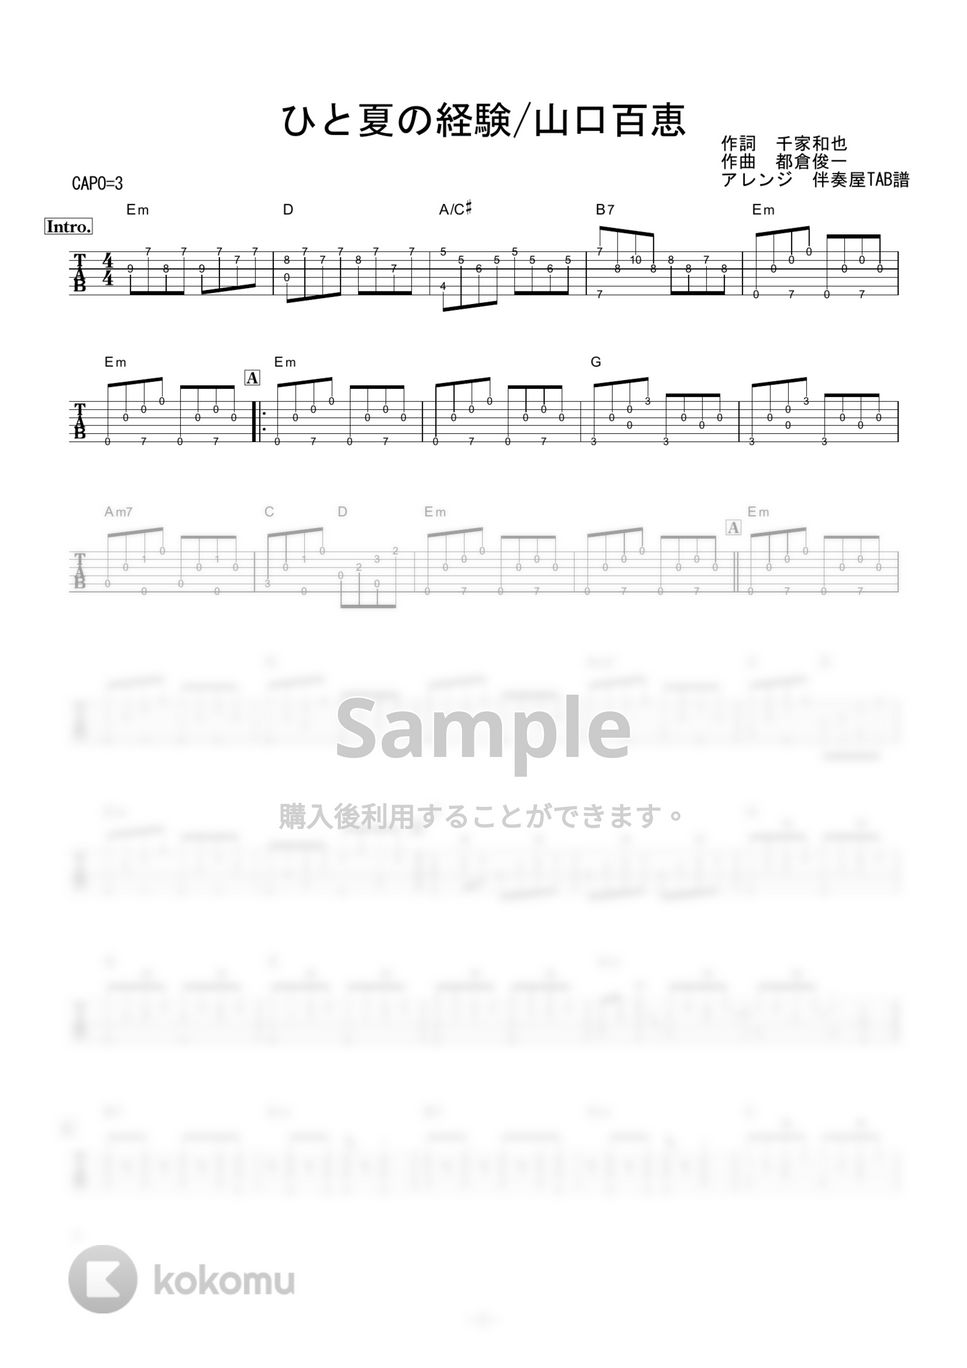 山口百恵 - ひと夏の経験 (ギター伴奏/イントロ・間奏ソロギター) by 伴奏屋TAB譜